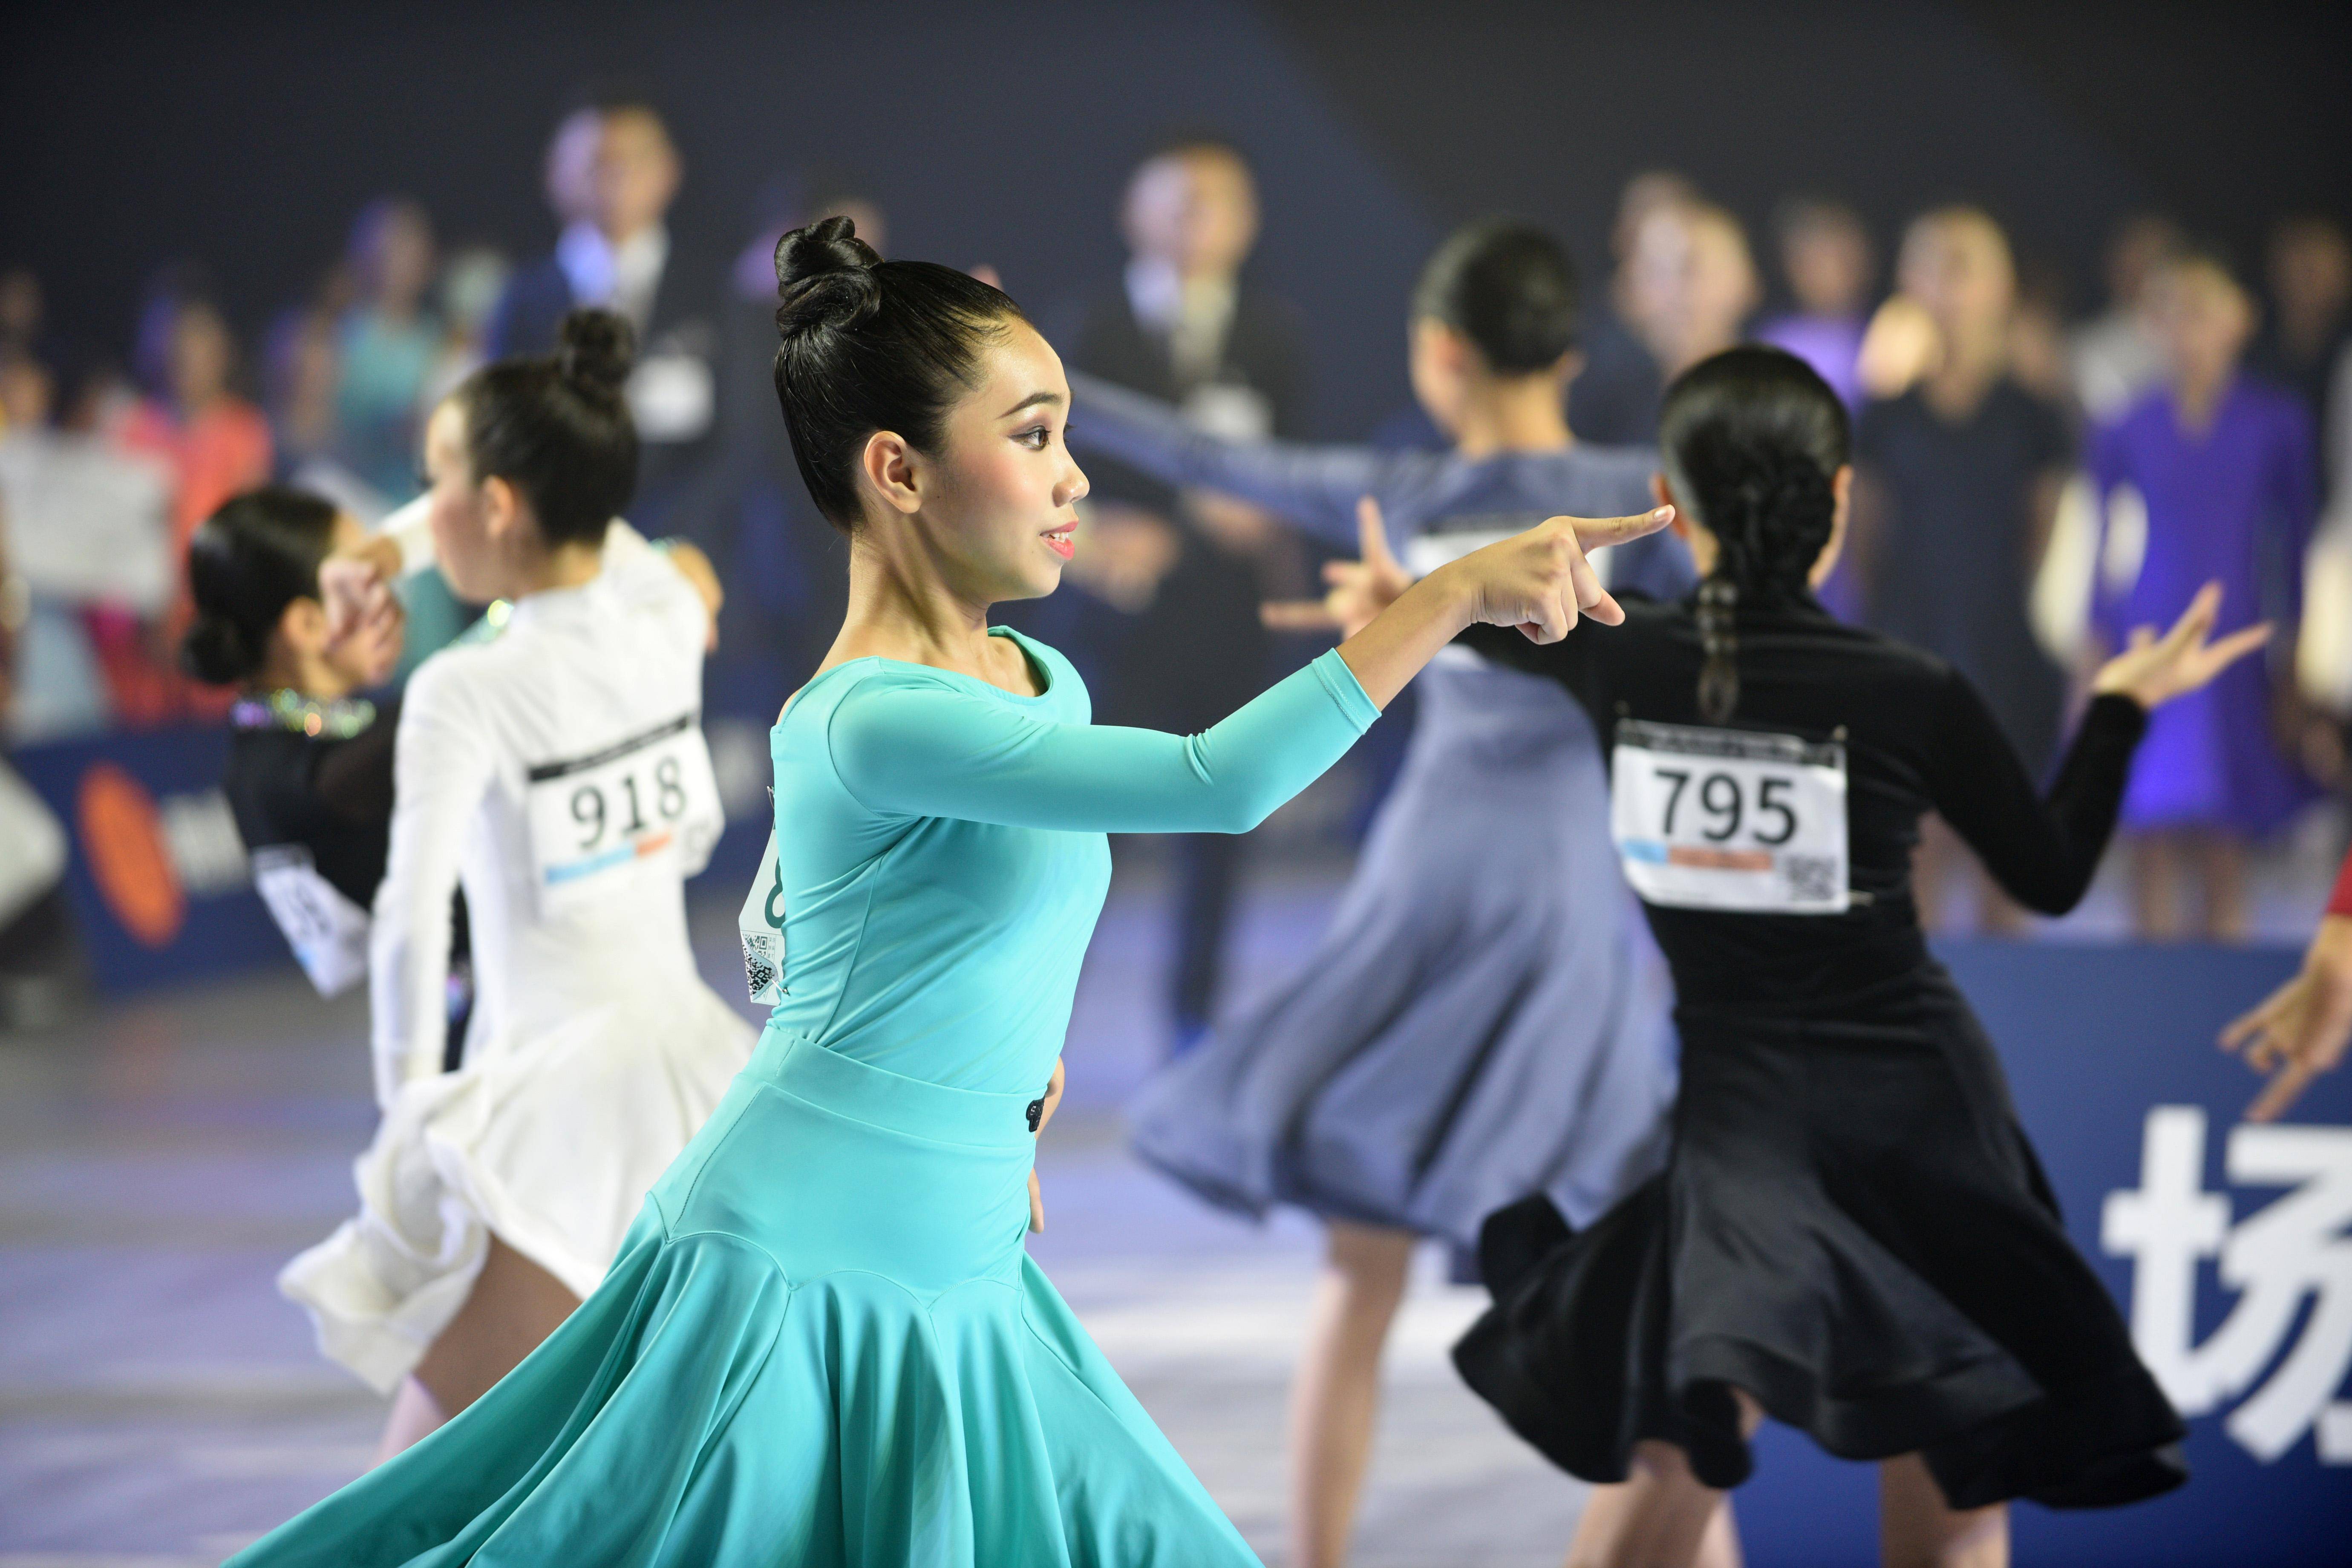 全省千名中小学生齐聚东莞,参加青少年拉丁舞·标准舞大赛